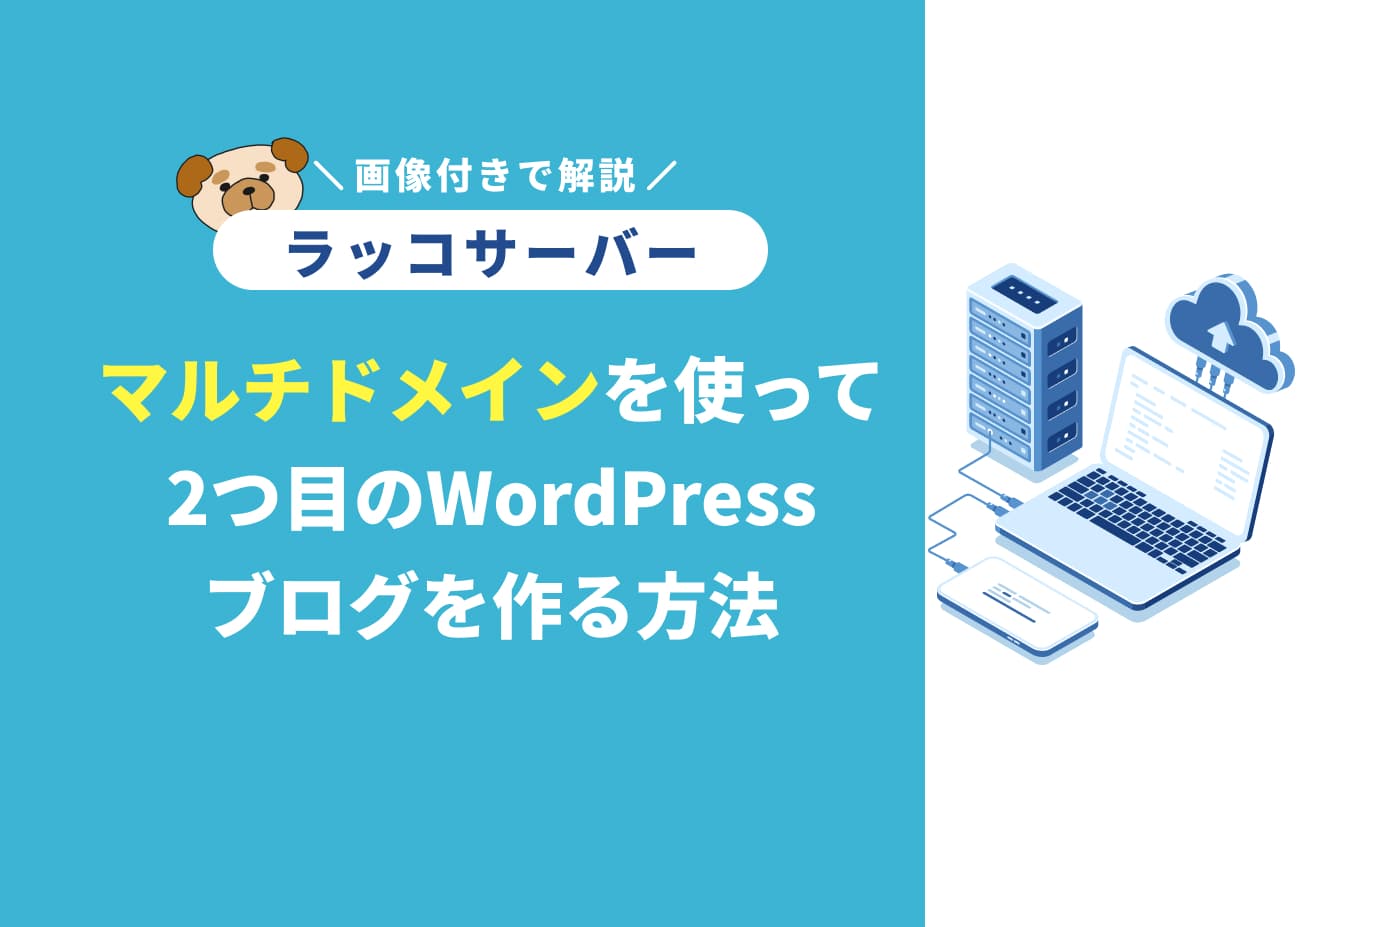 ラッコサーバーでマルチドメインを使って2つ目のWordPressブログを作る方法